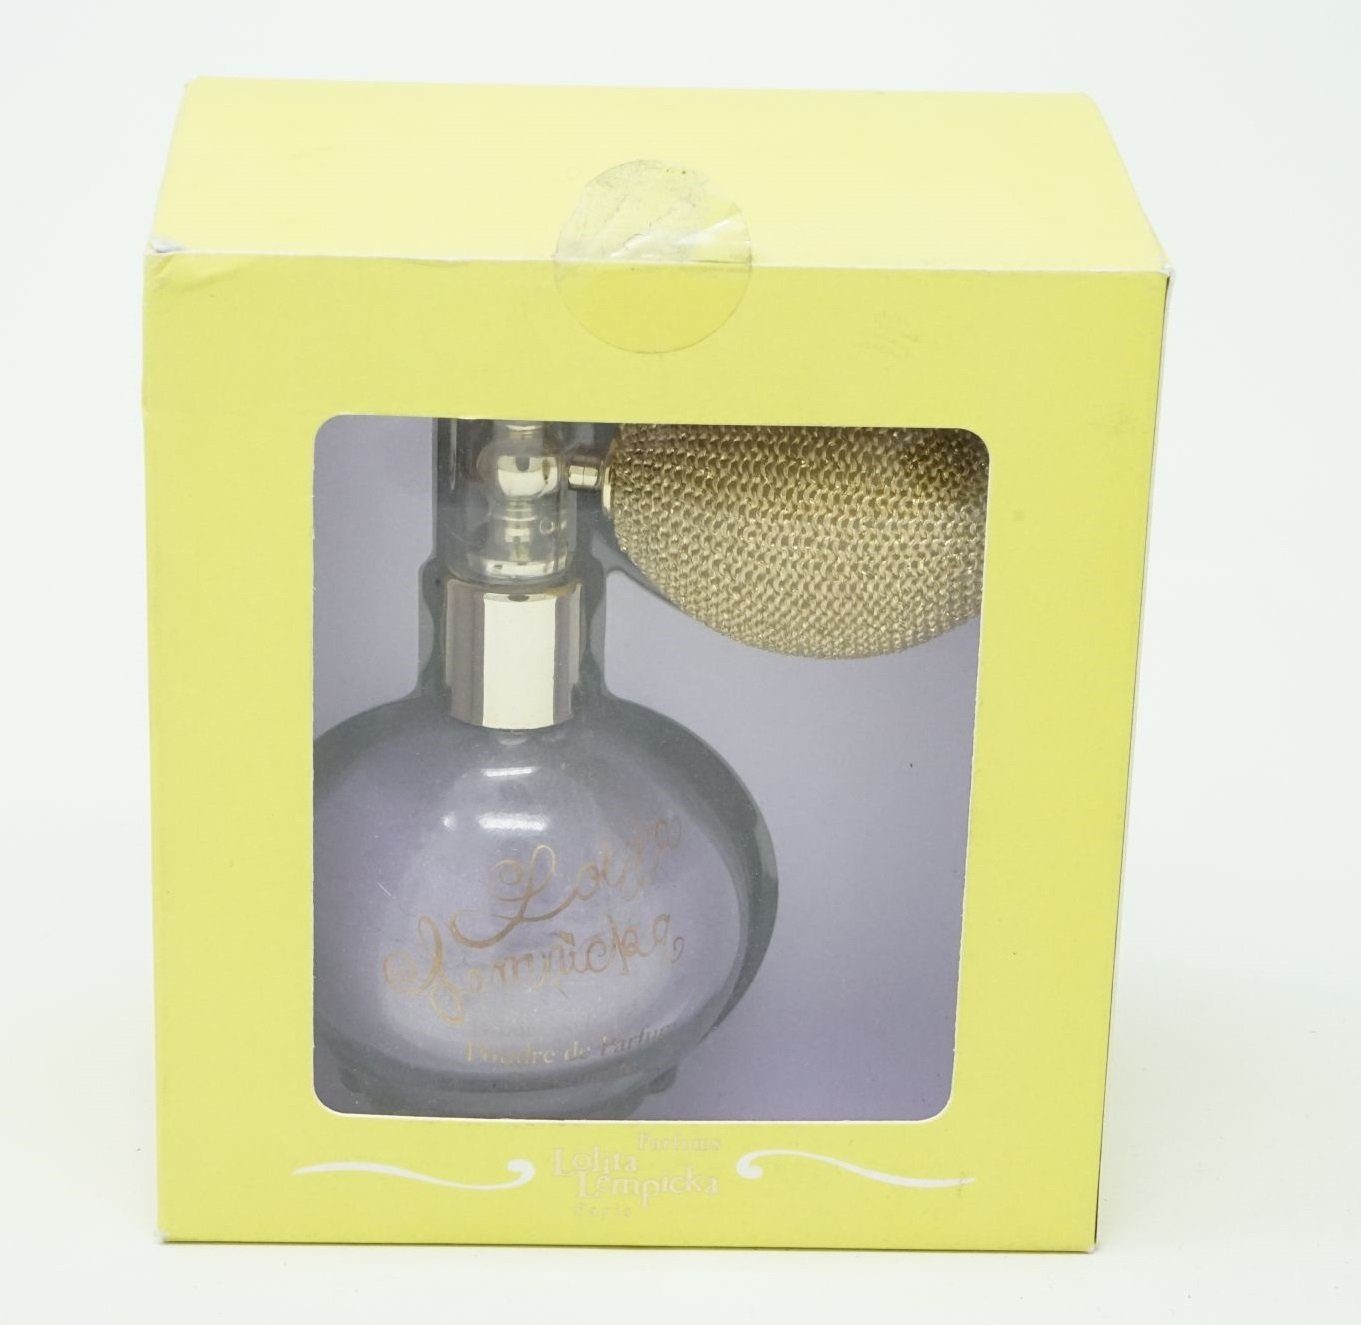 Lolita Lempicka Öl-Parfüm Lolita Lempicka Shimmering Powdered Perfume 17,2g